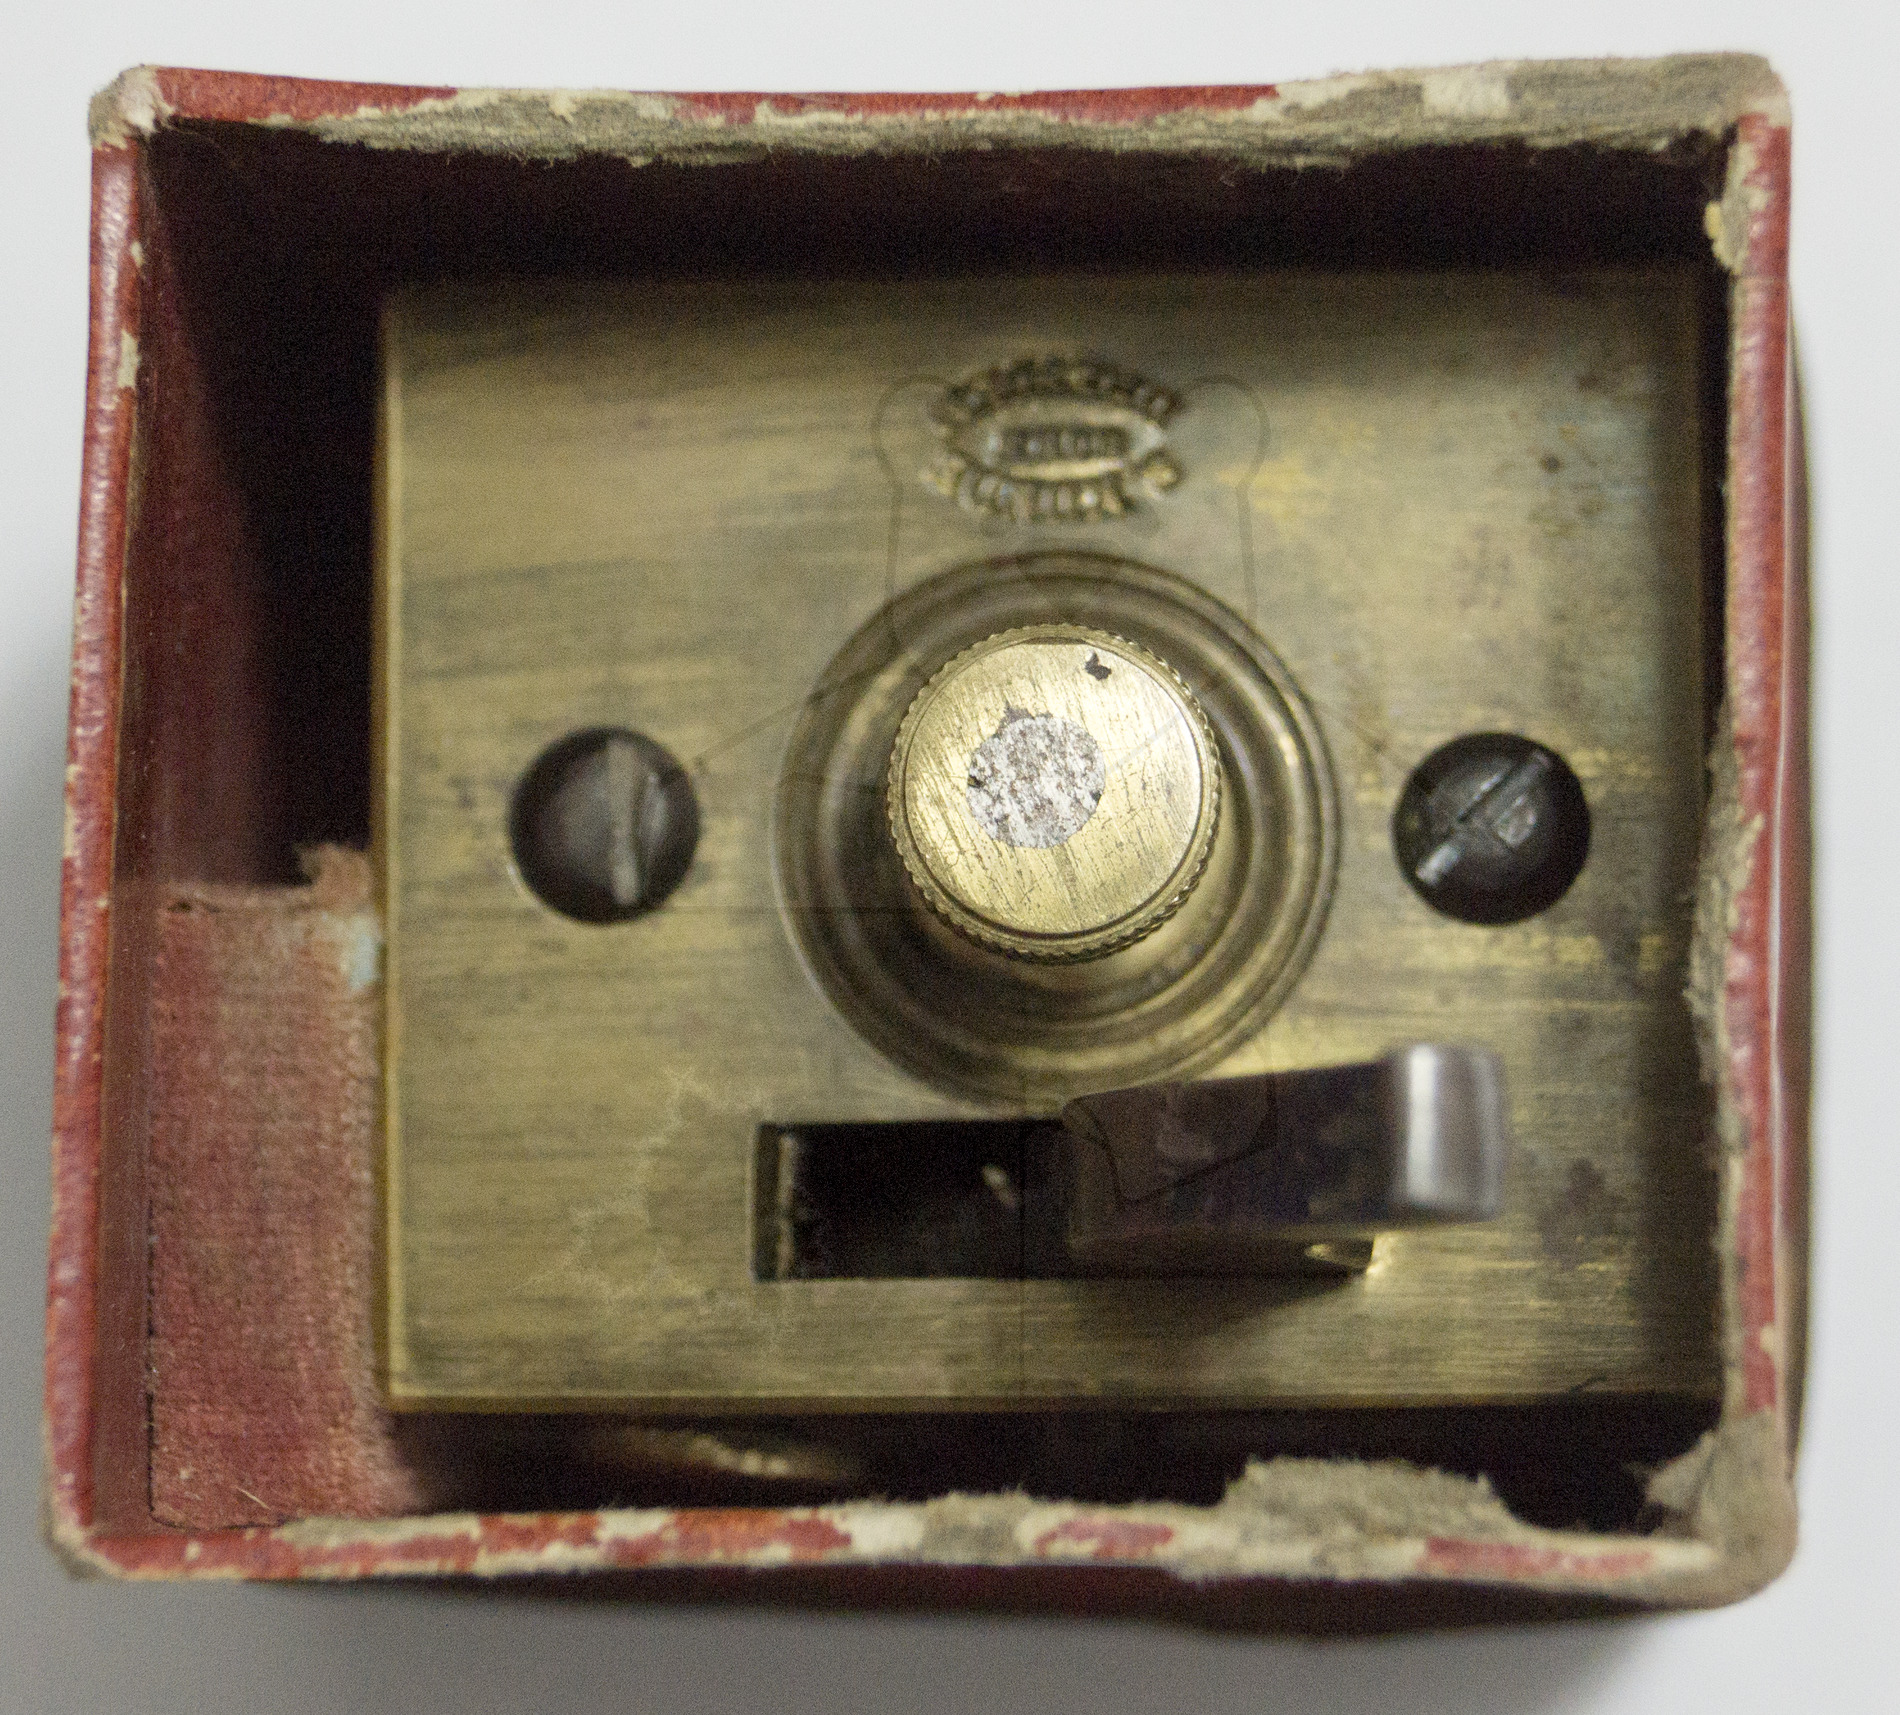 Schröpfschnepper, ca. 1870, der Schröpfschnepper in der Verpackung